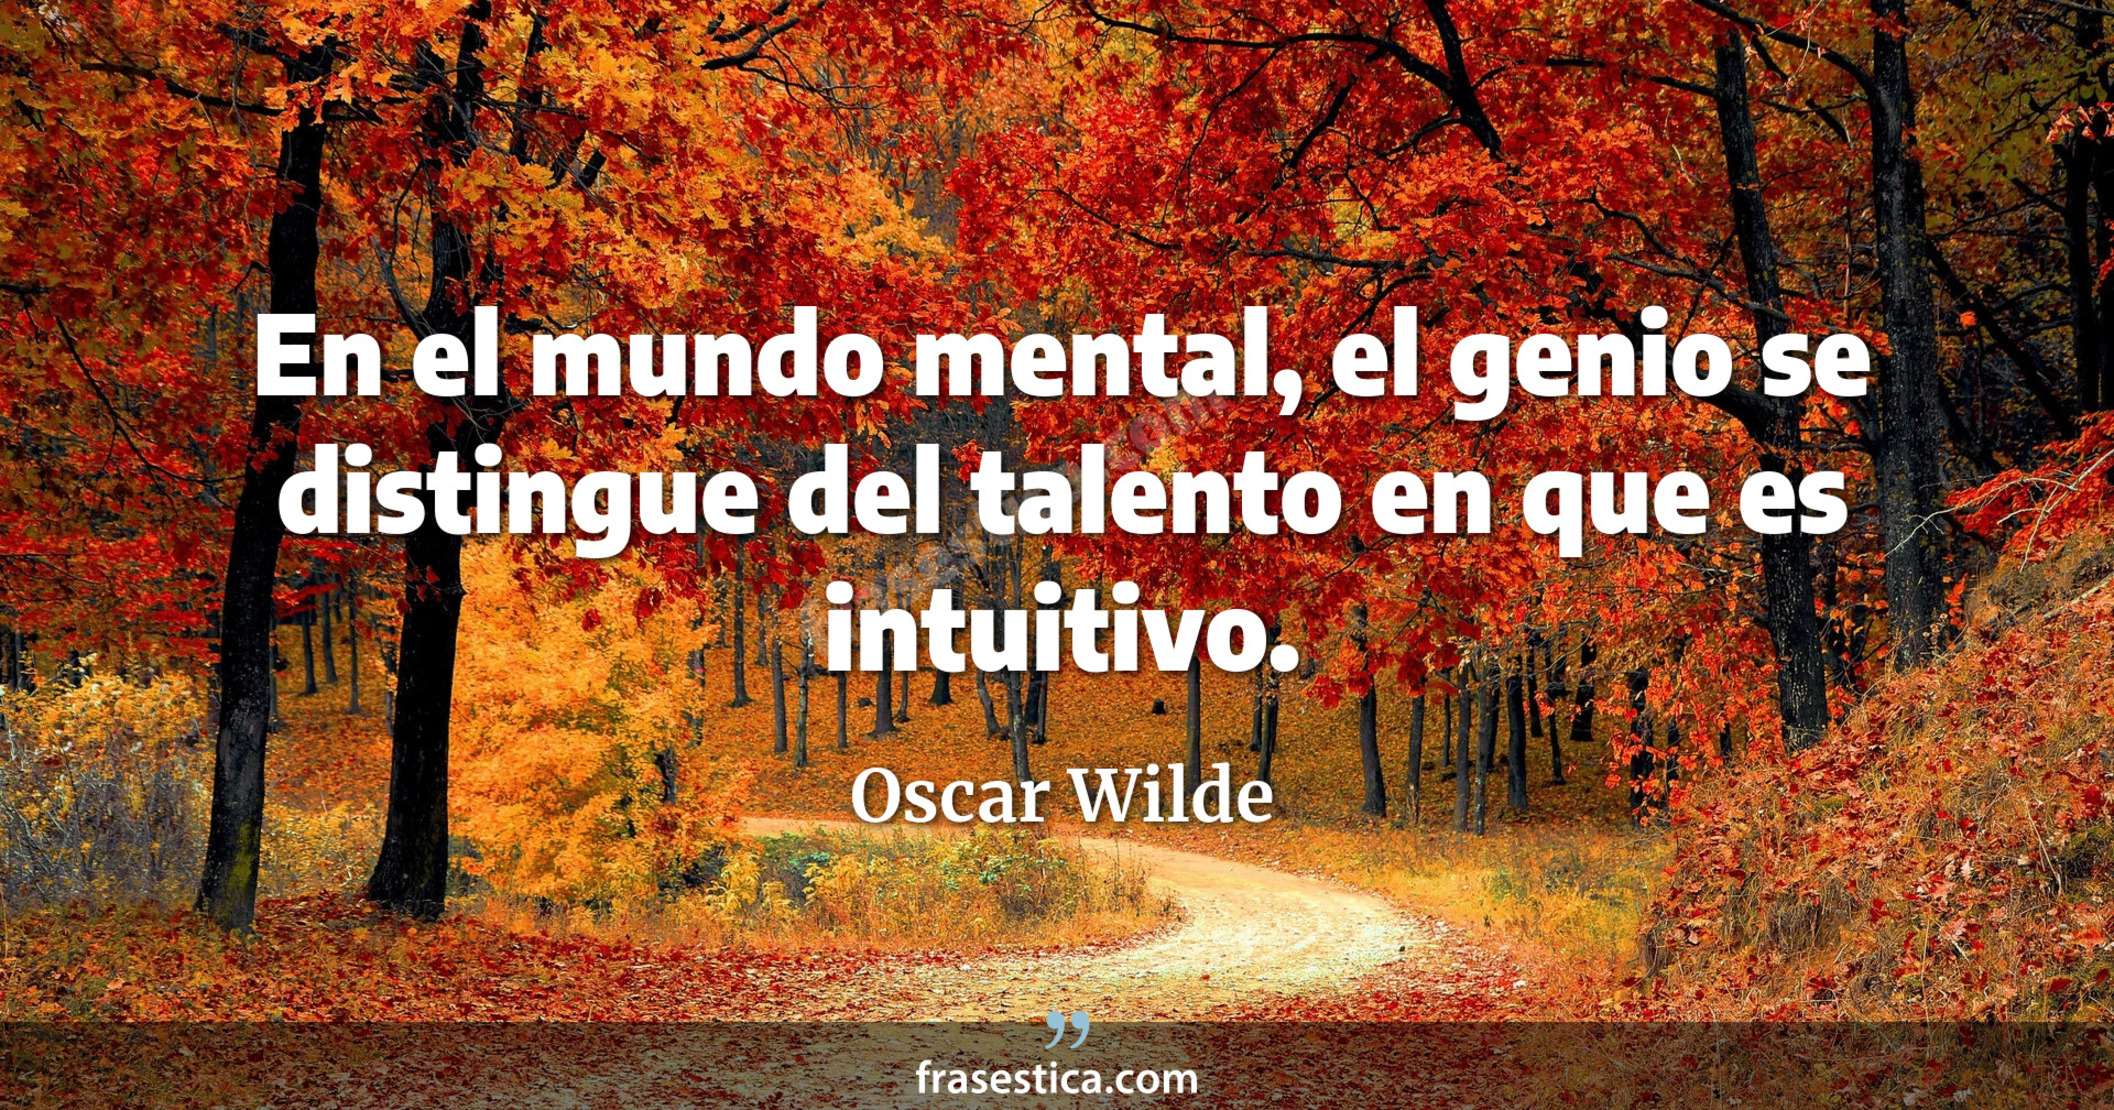 En el mundo mental, el genio se distingue del talento en que es intuitivo. - Oscar Wilde